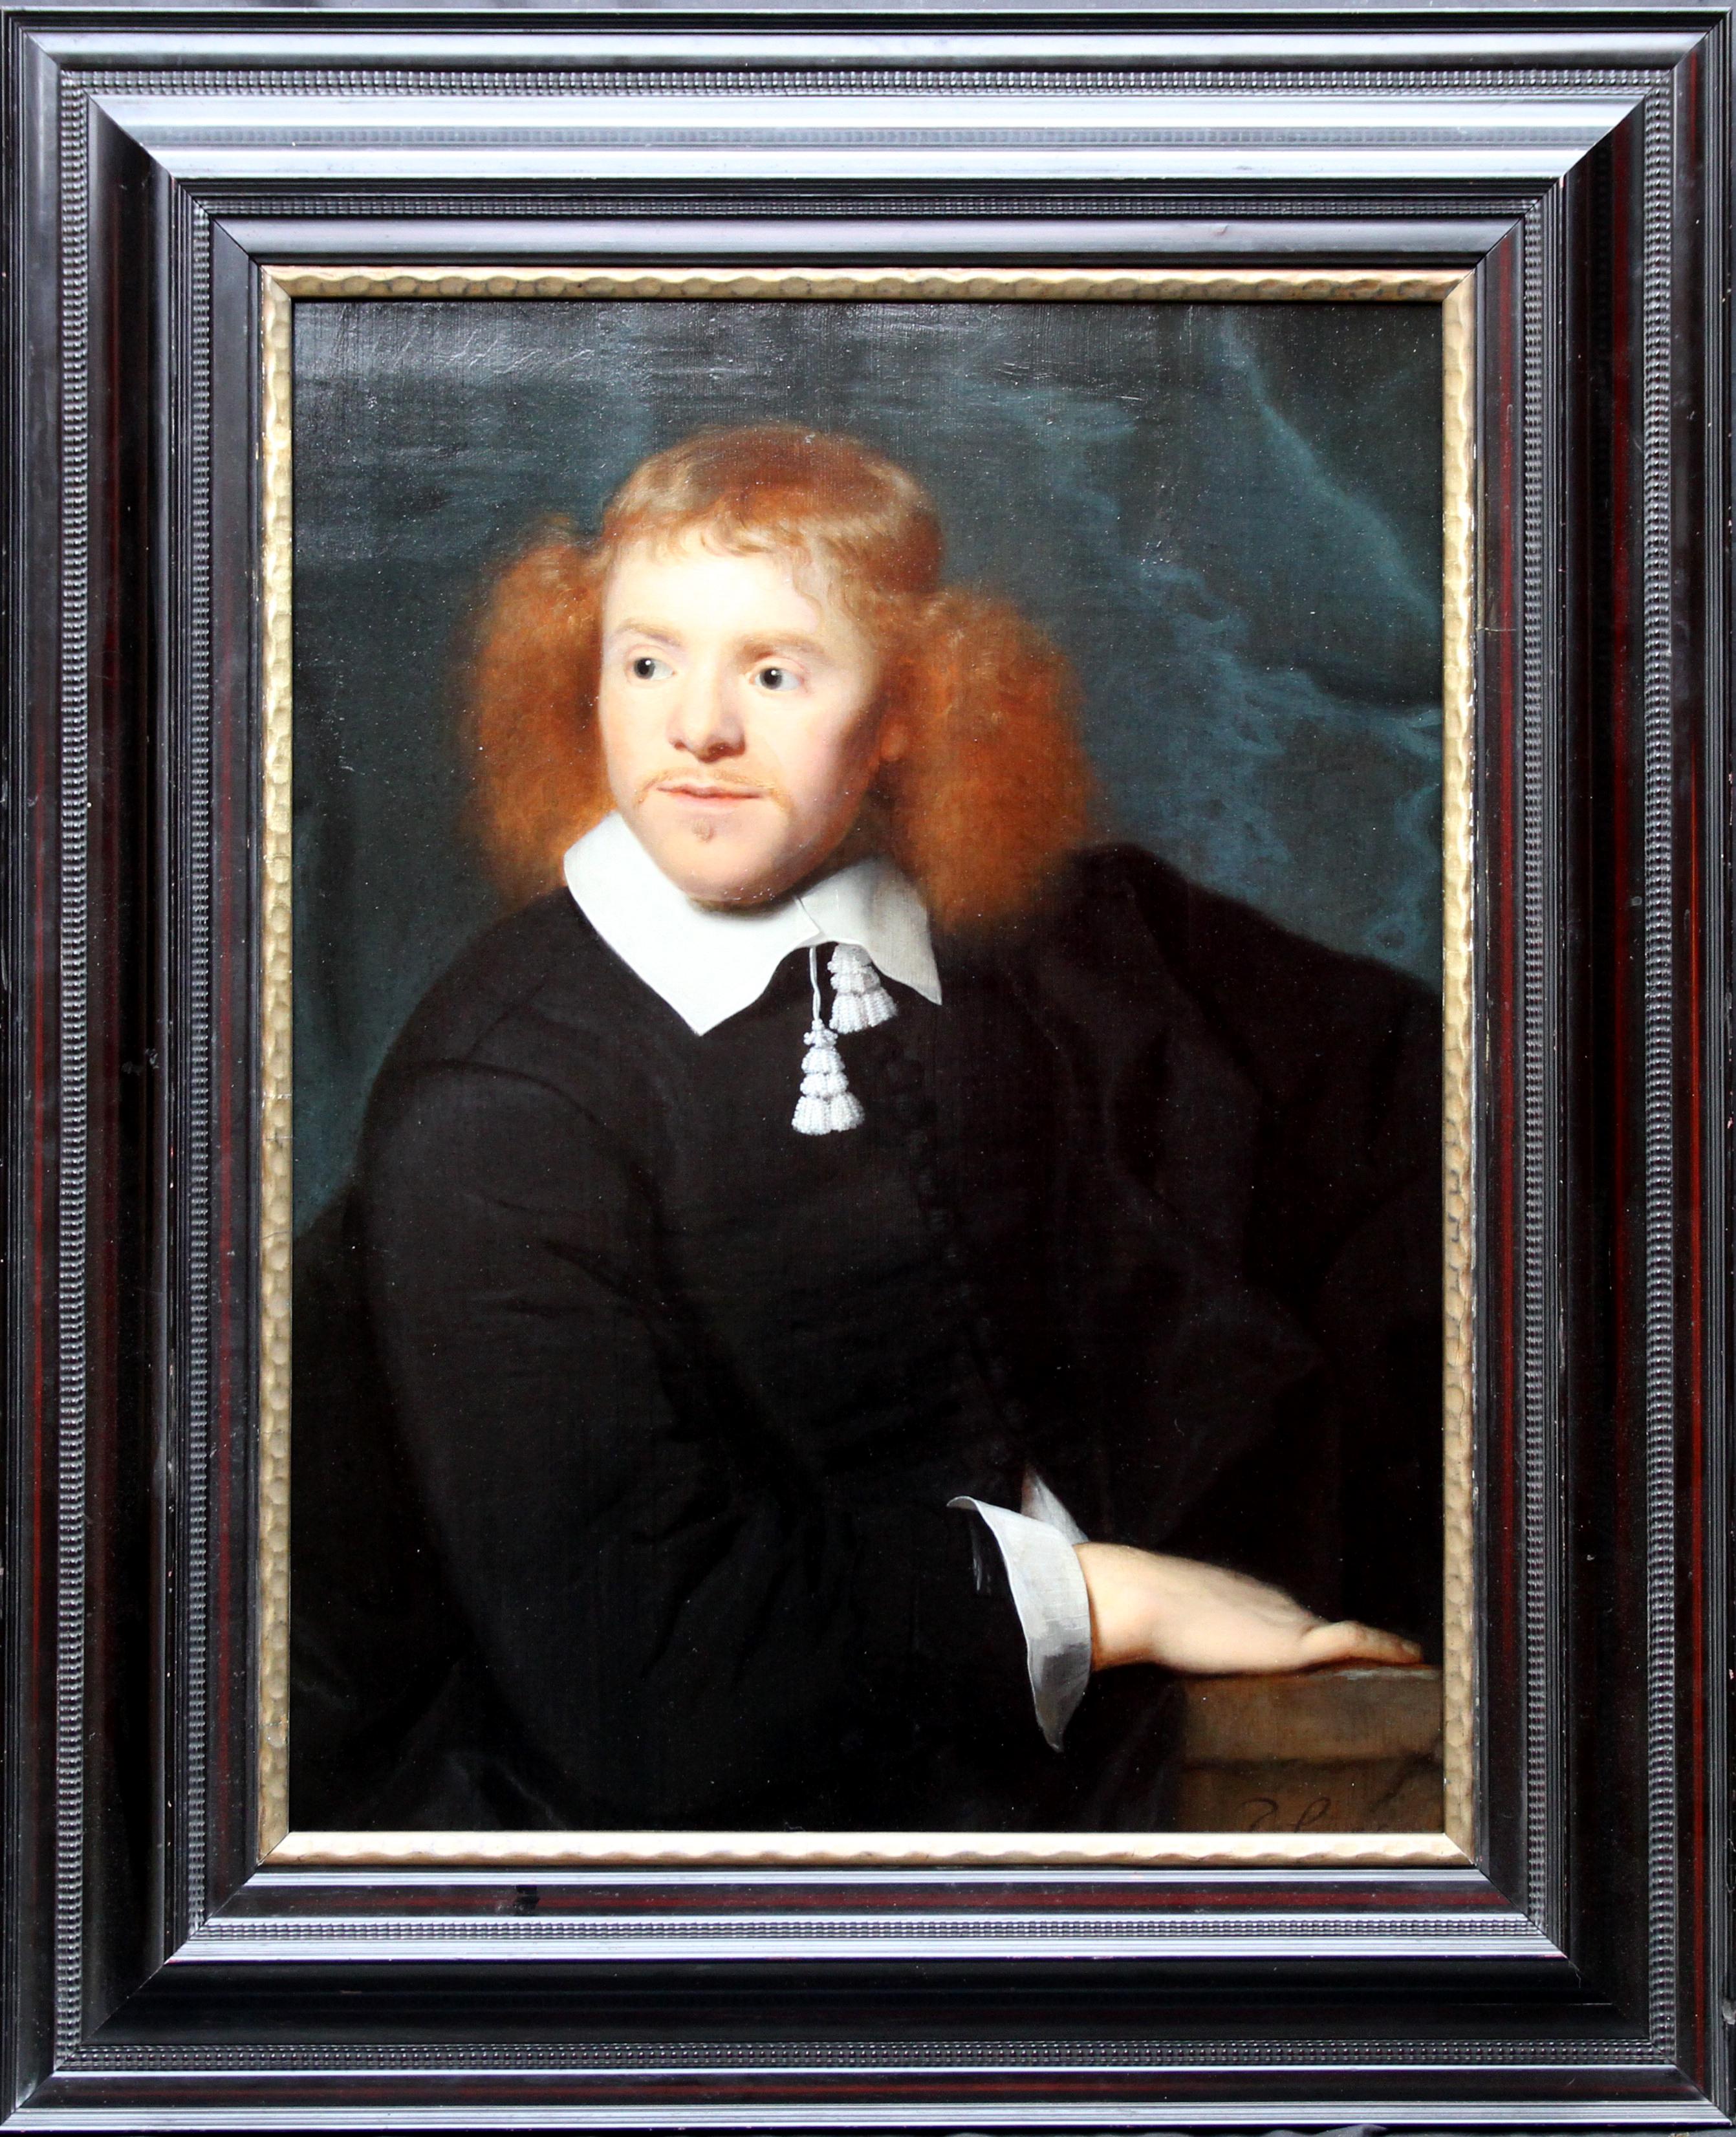 Simon Luttichuys Portrait Painting - Dutch Golden Age Portrait - Old Master 17thC art male portrait oil painting 